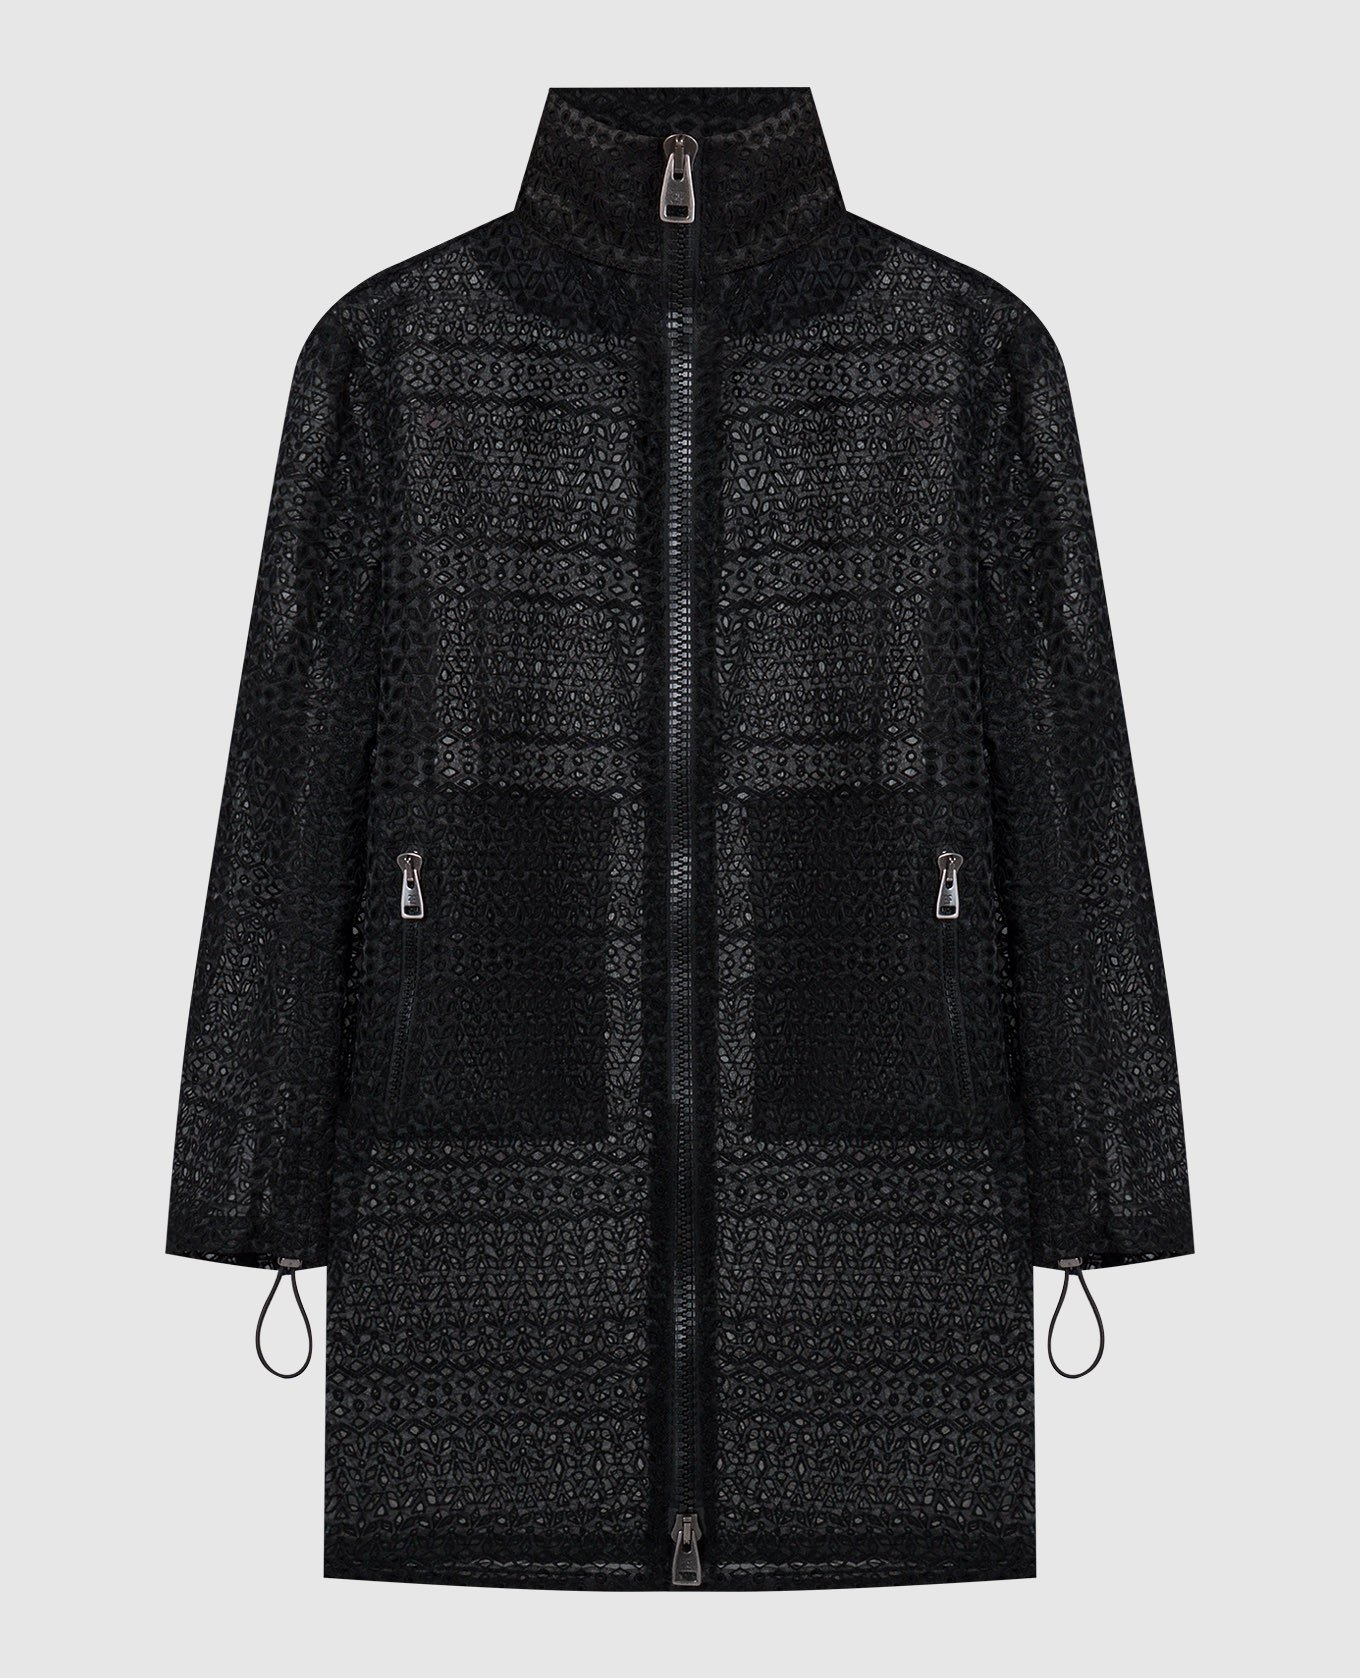 Black openwork coat